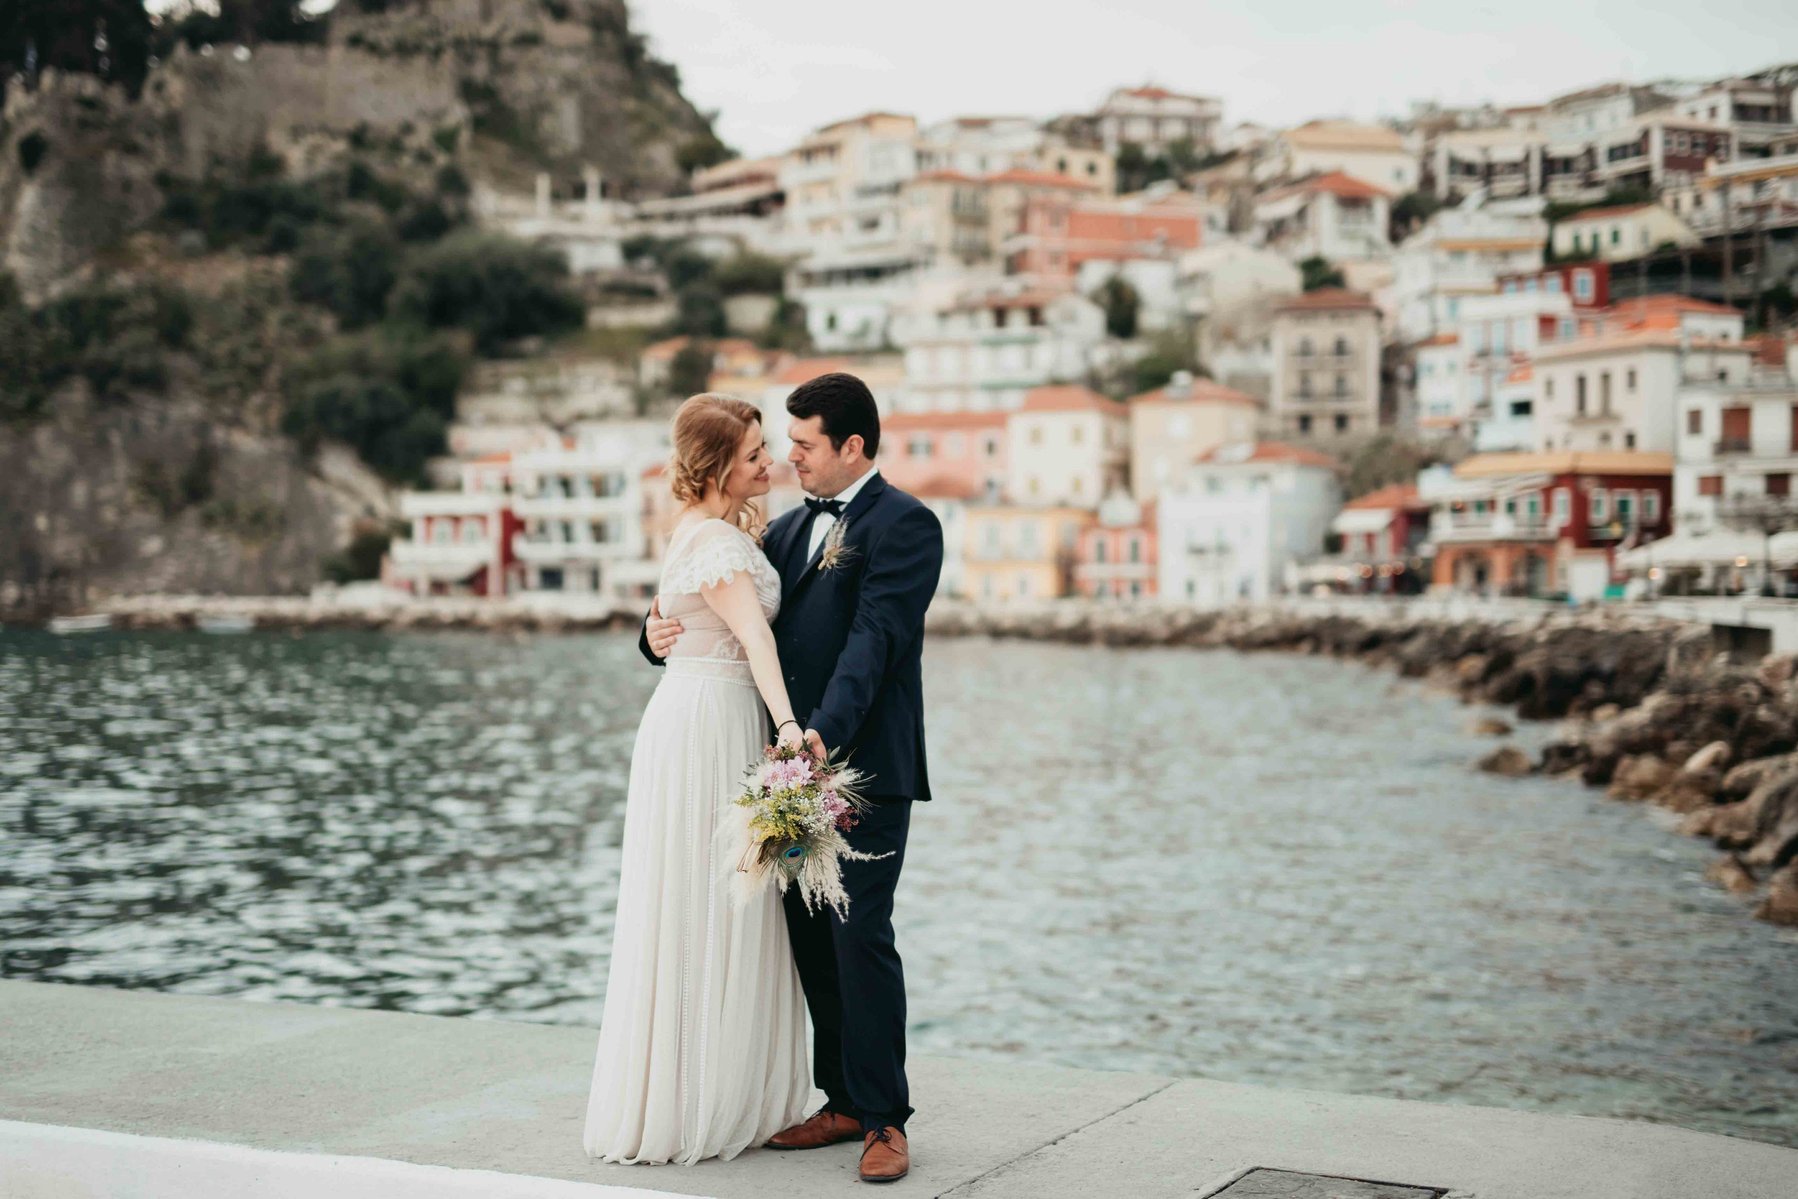 Drömmen om bröllop utomlands blir sann för många par - bild från turist orten Parga i Grekland. 